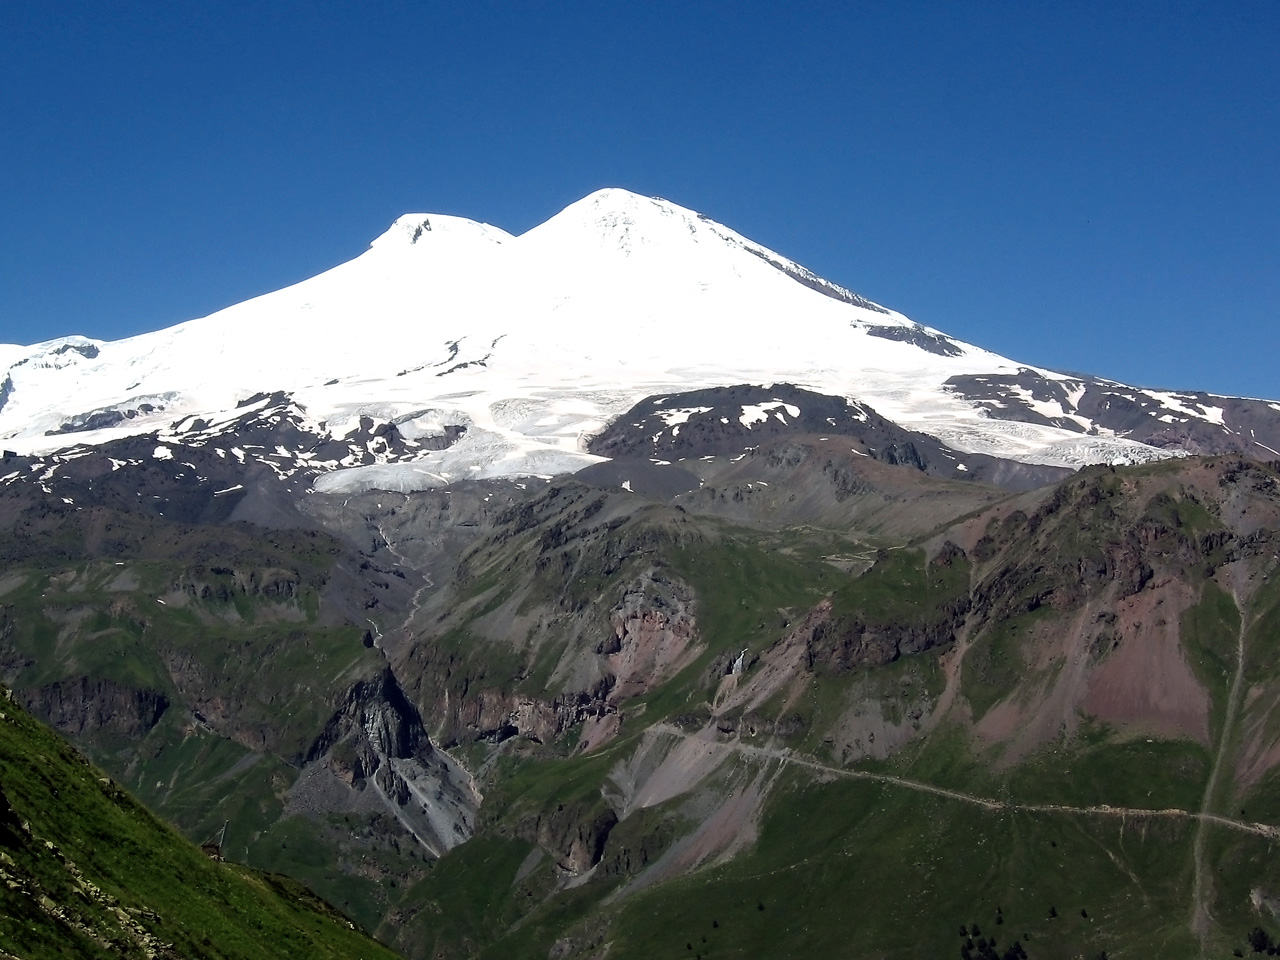 Гора Эльбрус (5642 м) — высочайшая вершина России